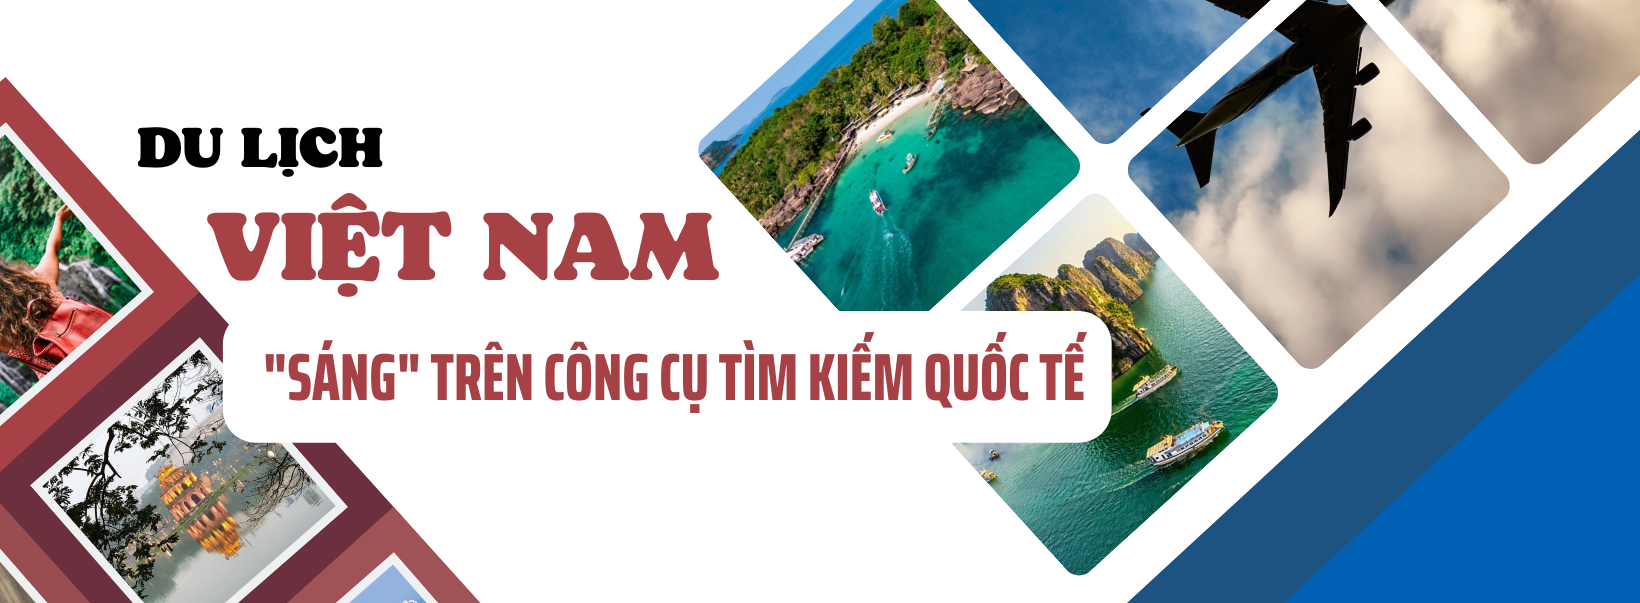 Du lịch Việt Nam và vị thế đầy tự hào trên bản đồ thế giới - Ảnh 1.